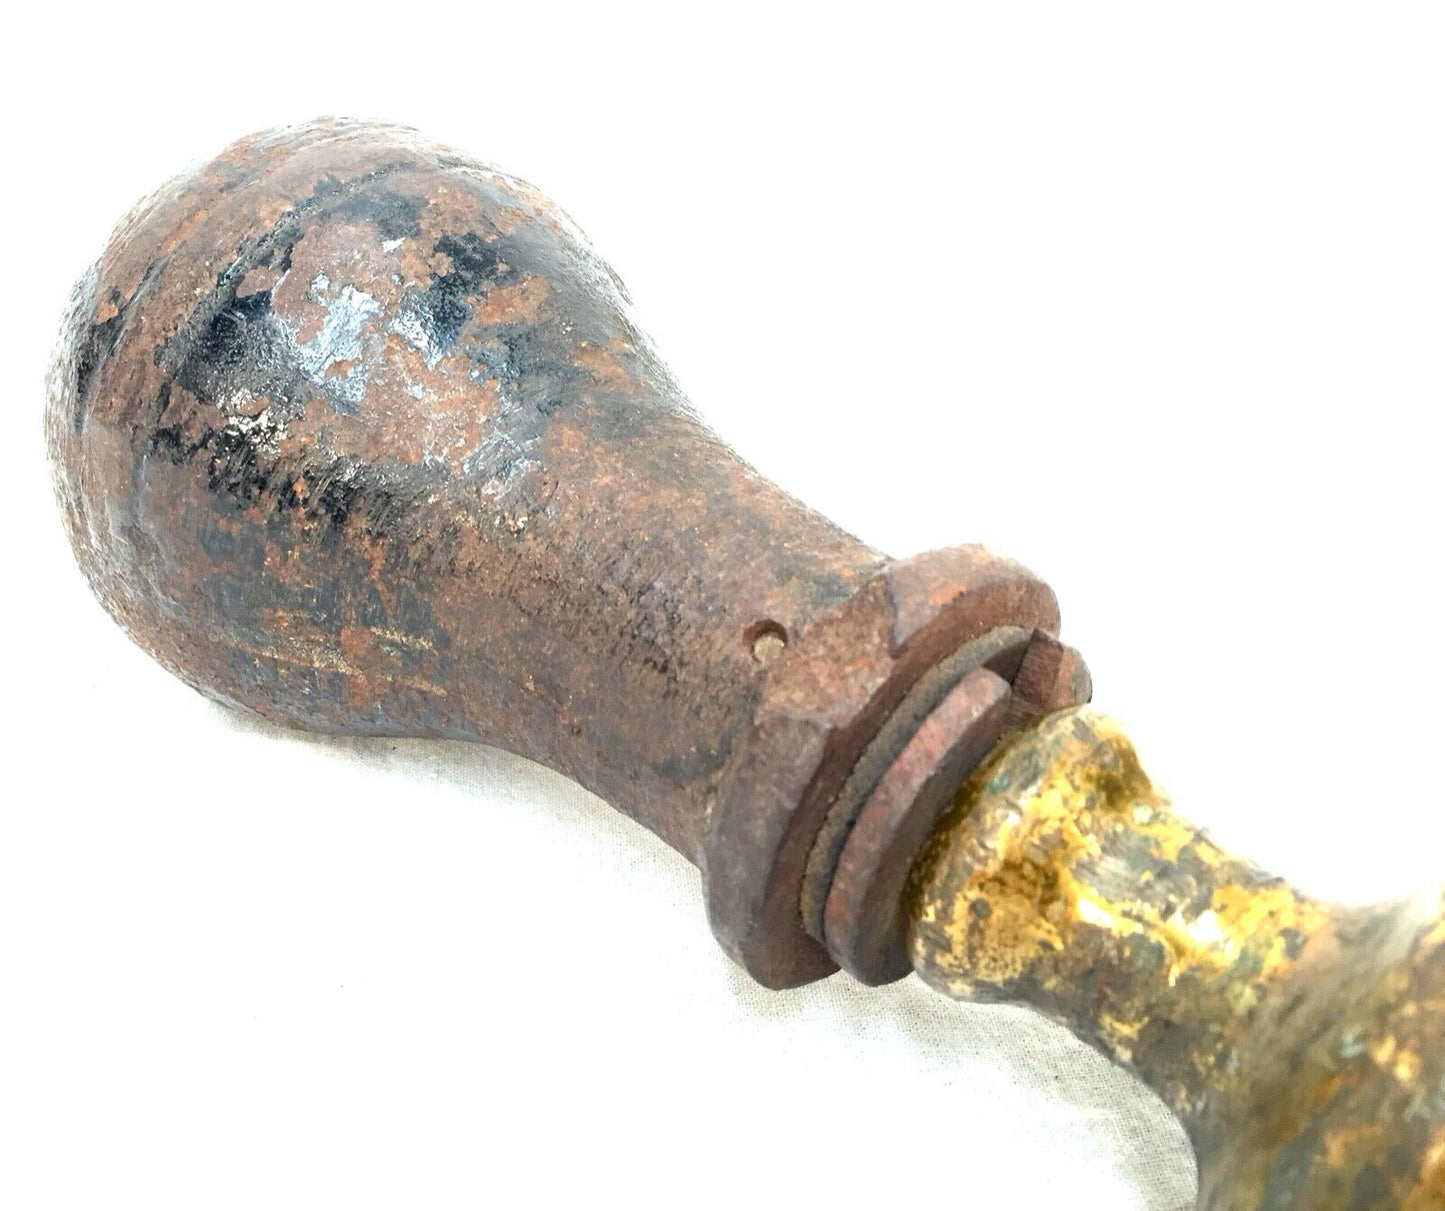 Antique 19th Century Brass & Iron Wine Bottle Corker Machine / Tool / Brewery